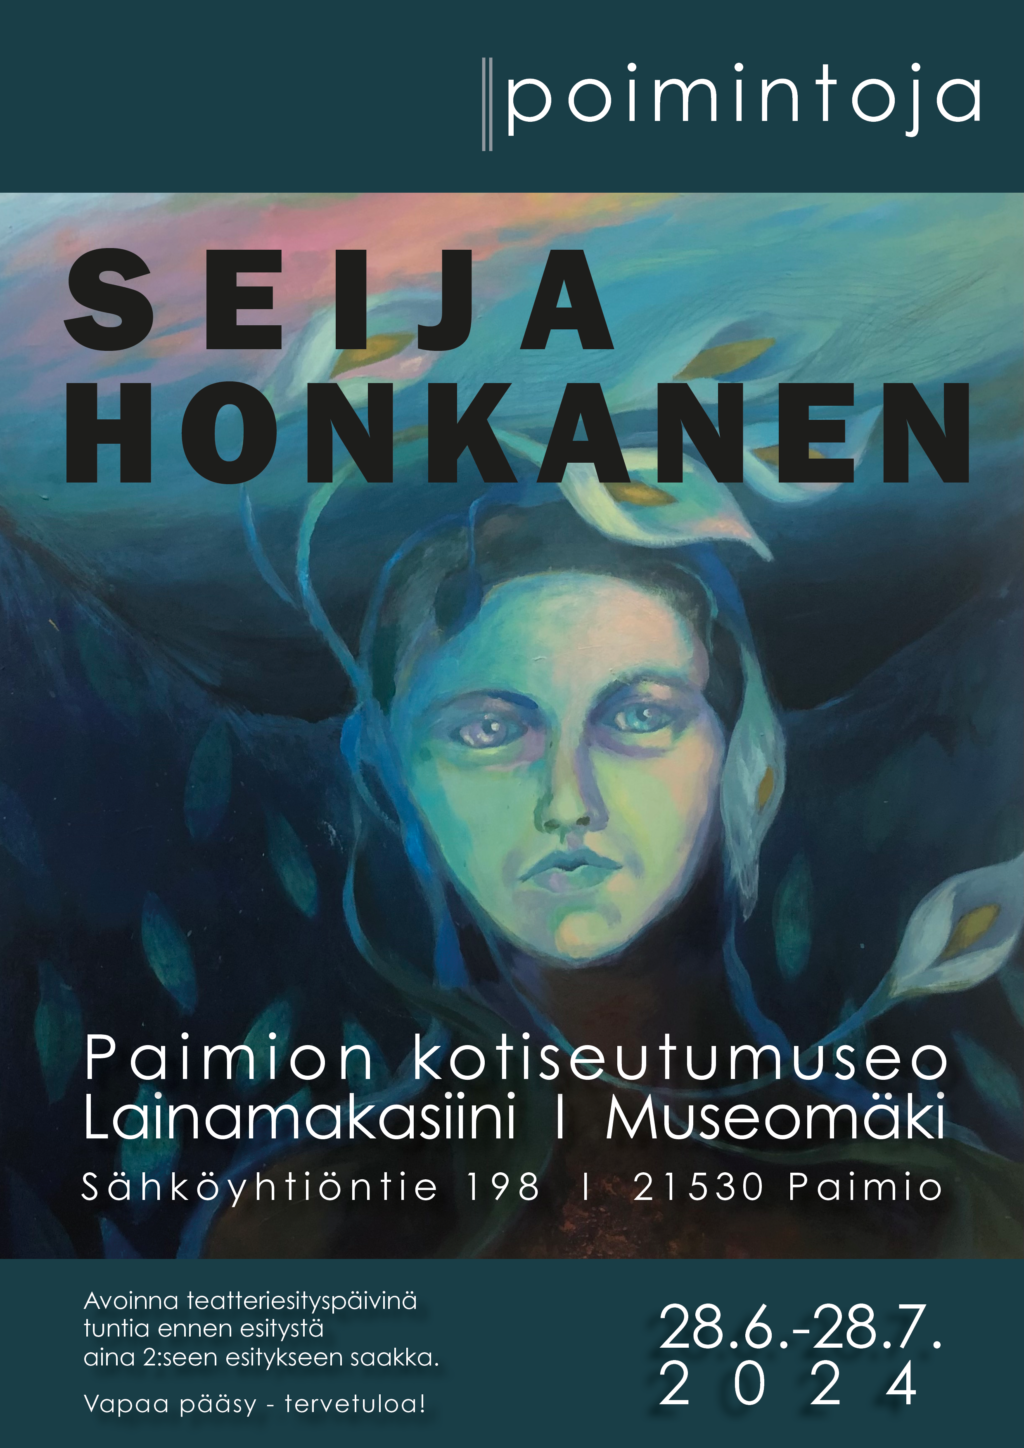 Seija Honkasen Poimintoja-näyttelyn juliste.